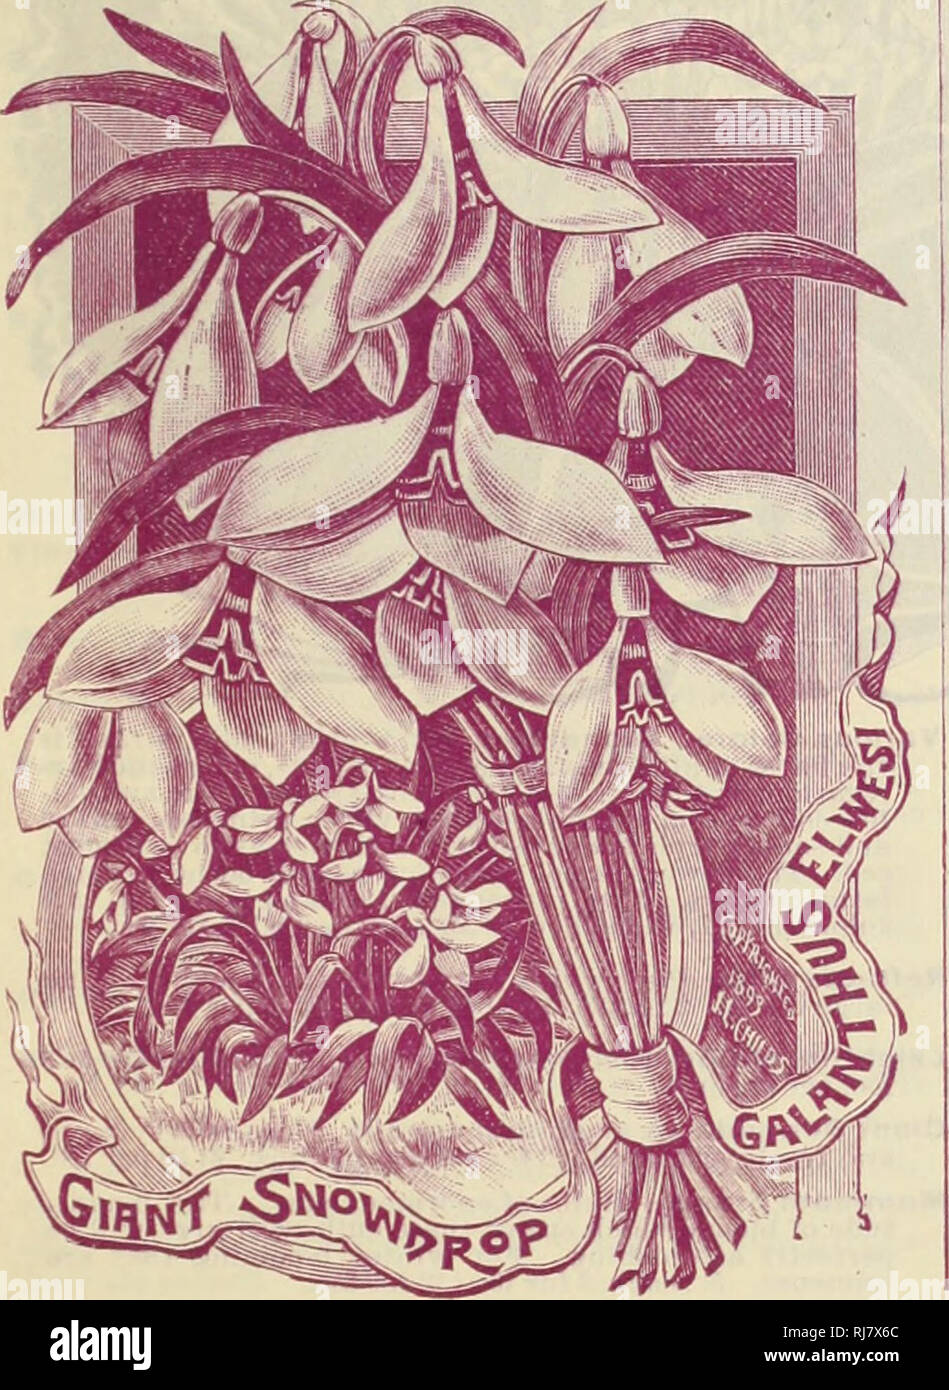 . Childs' automne catalogue de bulbes qui fleurissent, 1899. Pépinières (Horticulture) ; Catalogues Catalogues ampoules (plantes) ; John Lewis Childs (Cabinet) ; pépinières (Horticulture) ; Ampoules (plantes). L'allium NEAl'OLITANUM Neapolltanum-, les gens l'apprécient parce qu'est si certain de fleurir "tml tellement daintily joli. C'est robuste à l'extérieur, mais. en- portes est le moyen le plus facile de tous les bulbes de croître. Trois ou quatre peuvent être placées dans un pot de 81 cm-i. Les tiges lieu à une hauteur de dix-huit pouces, compte de belles ombelles de ciel étoilé (abaissement de la ligne blanche, qui restent un mois parfait. Hermettl-comme le ci-dessus, mais d'une couleur blanc-rosé. Moly-B Banque D'Images